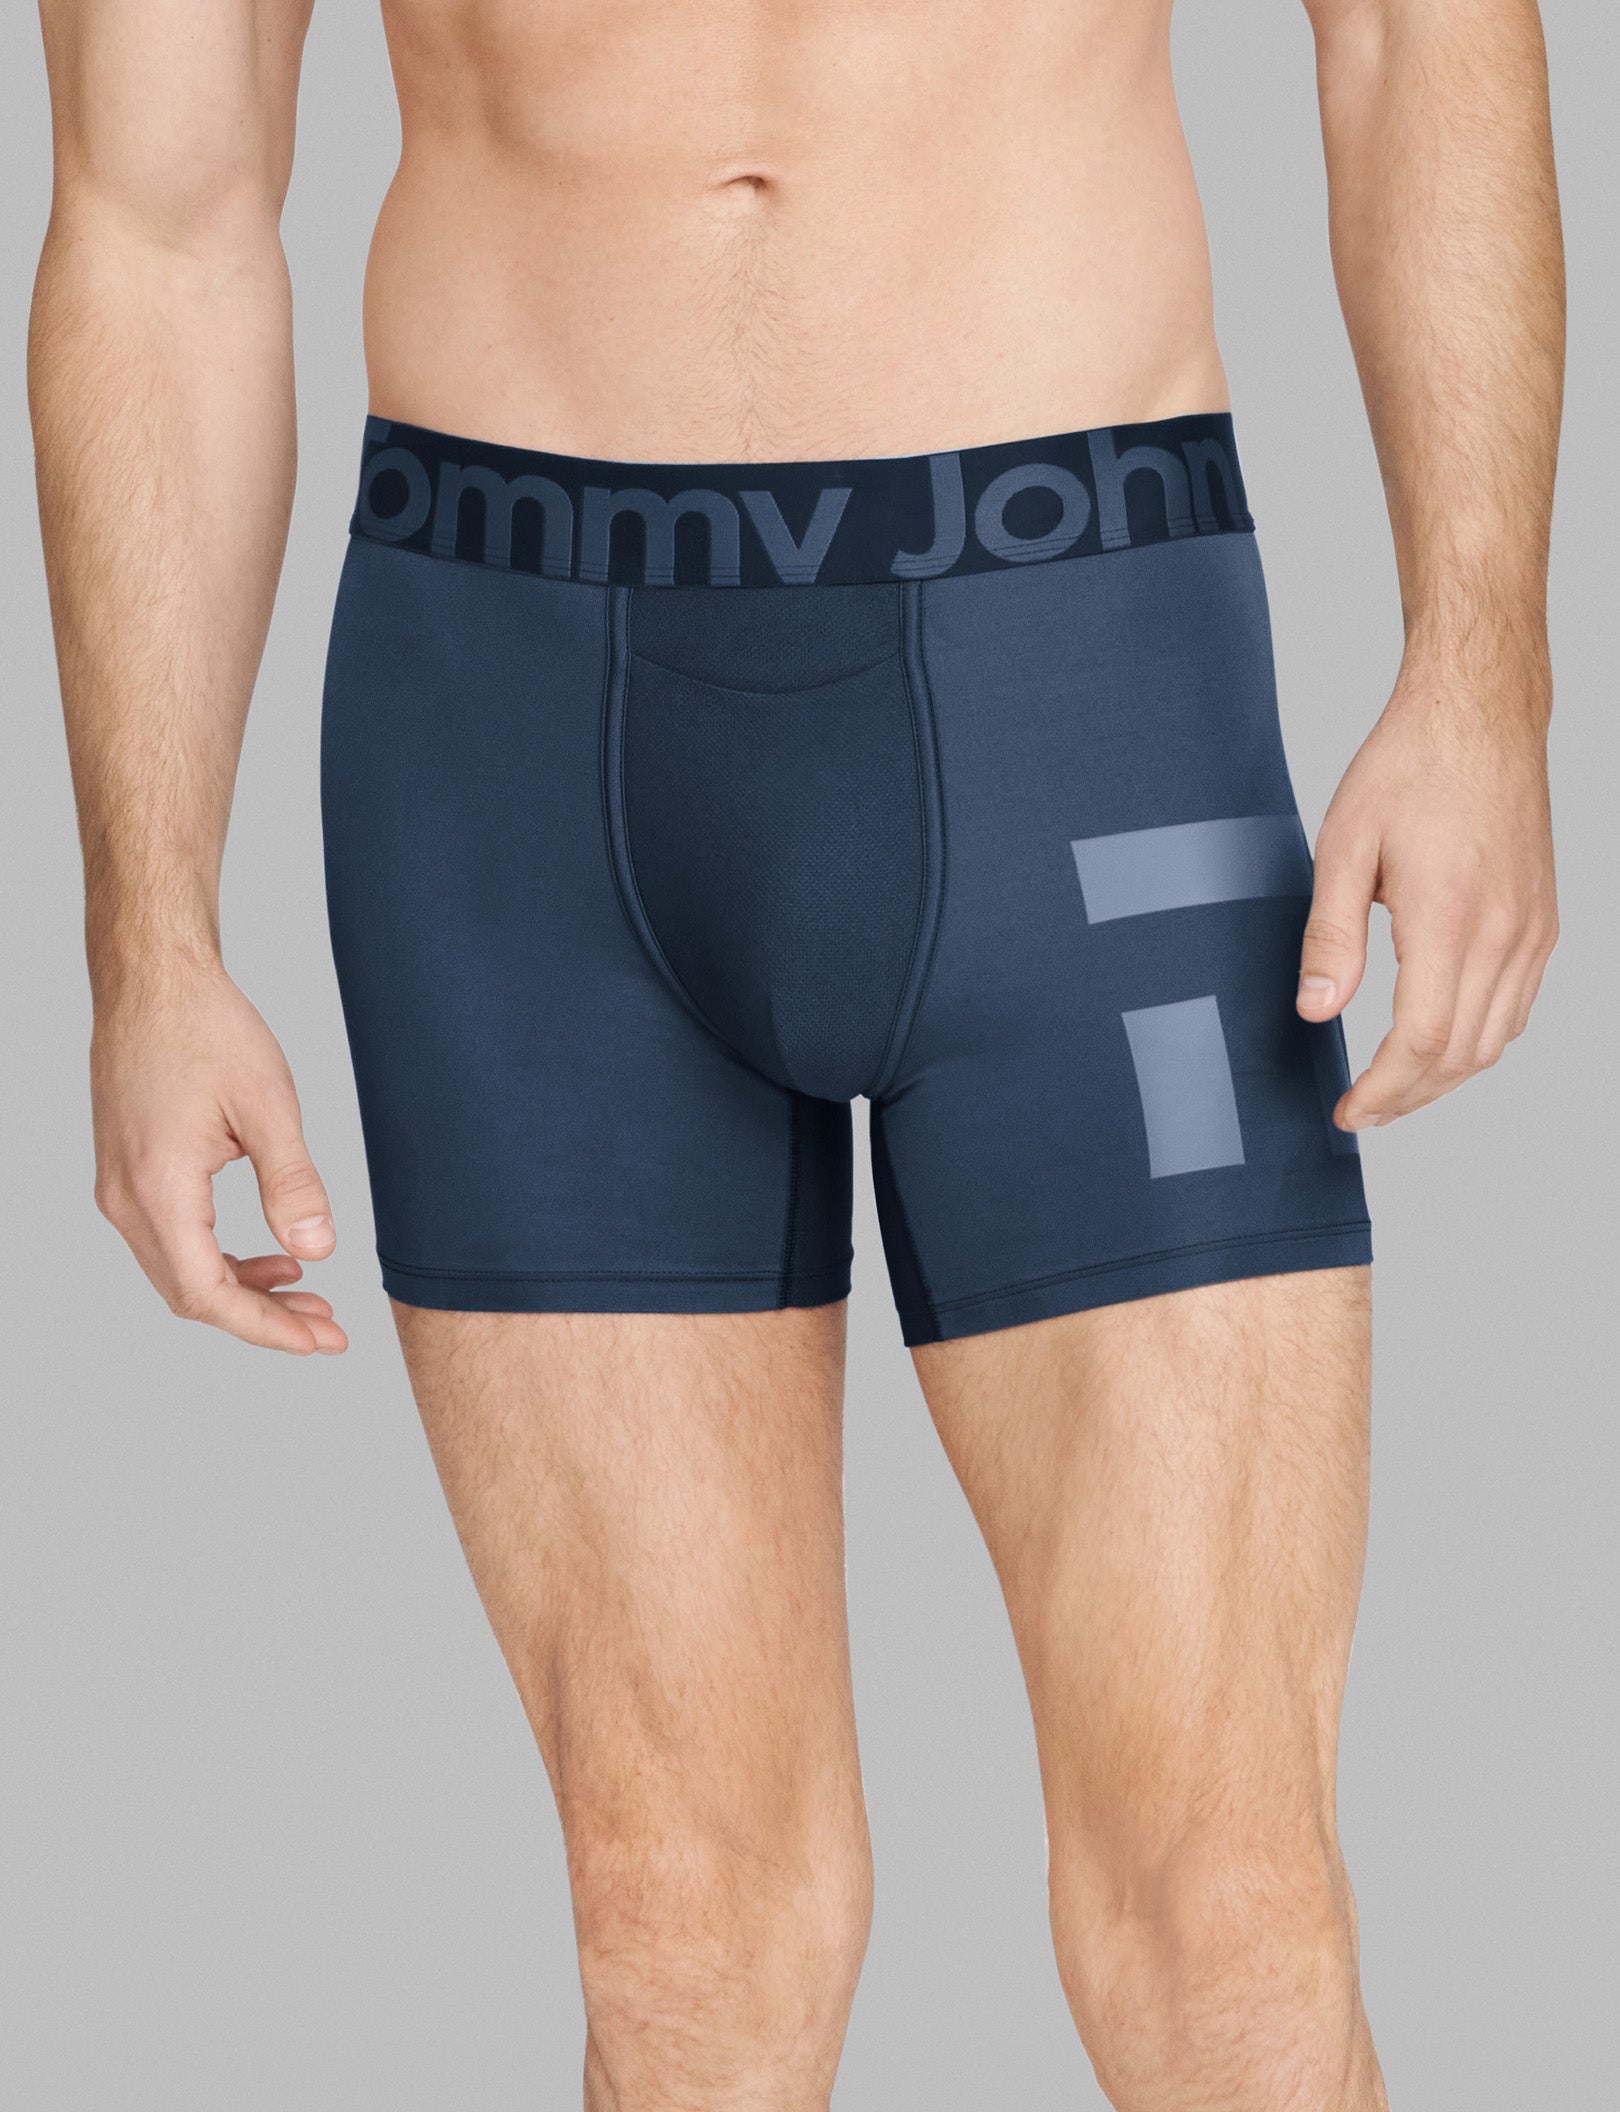  Tommy John Men's Underwear – 360 Sport Trunk with